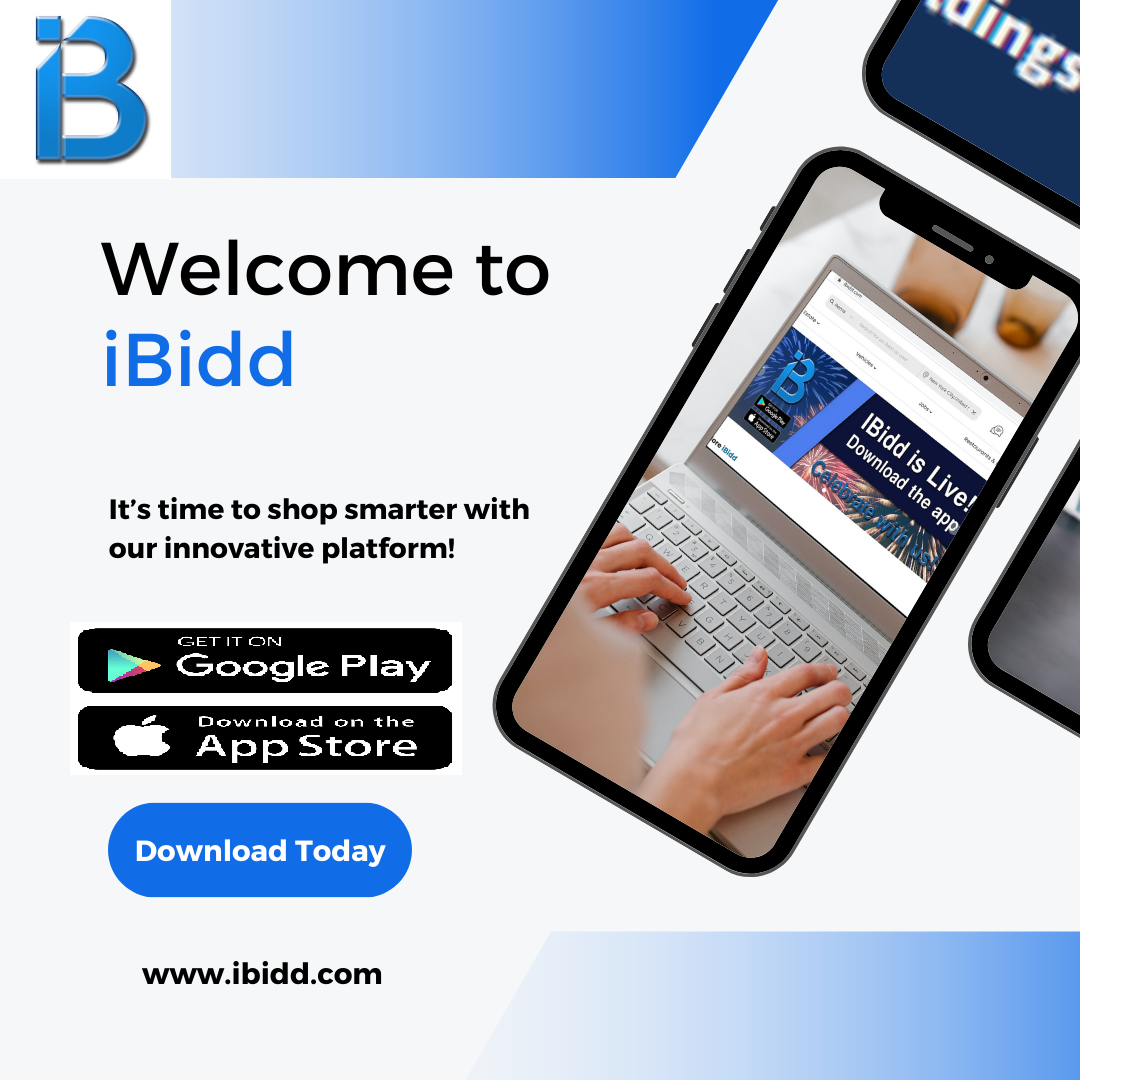 Explore iBidd